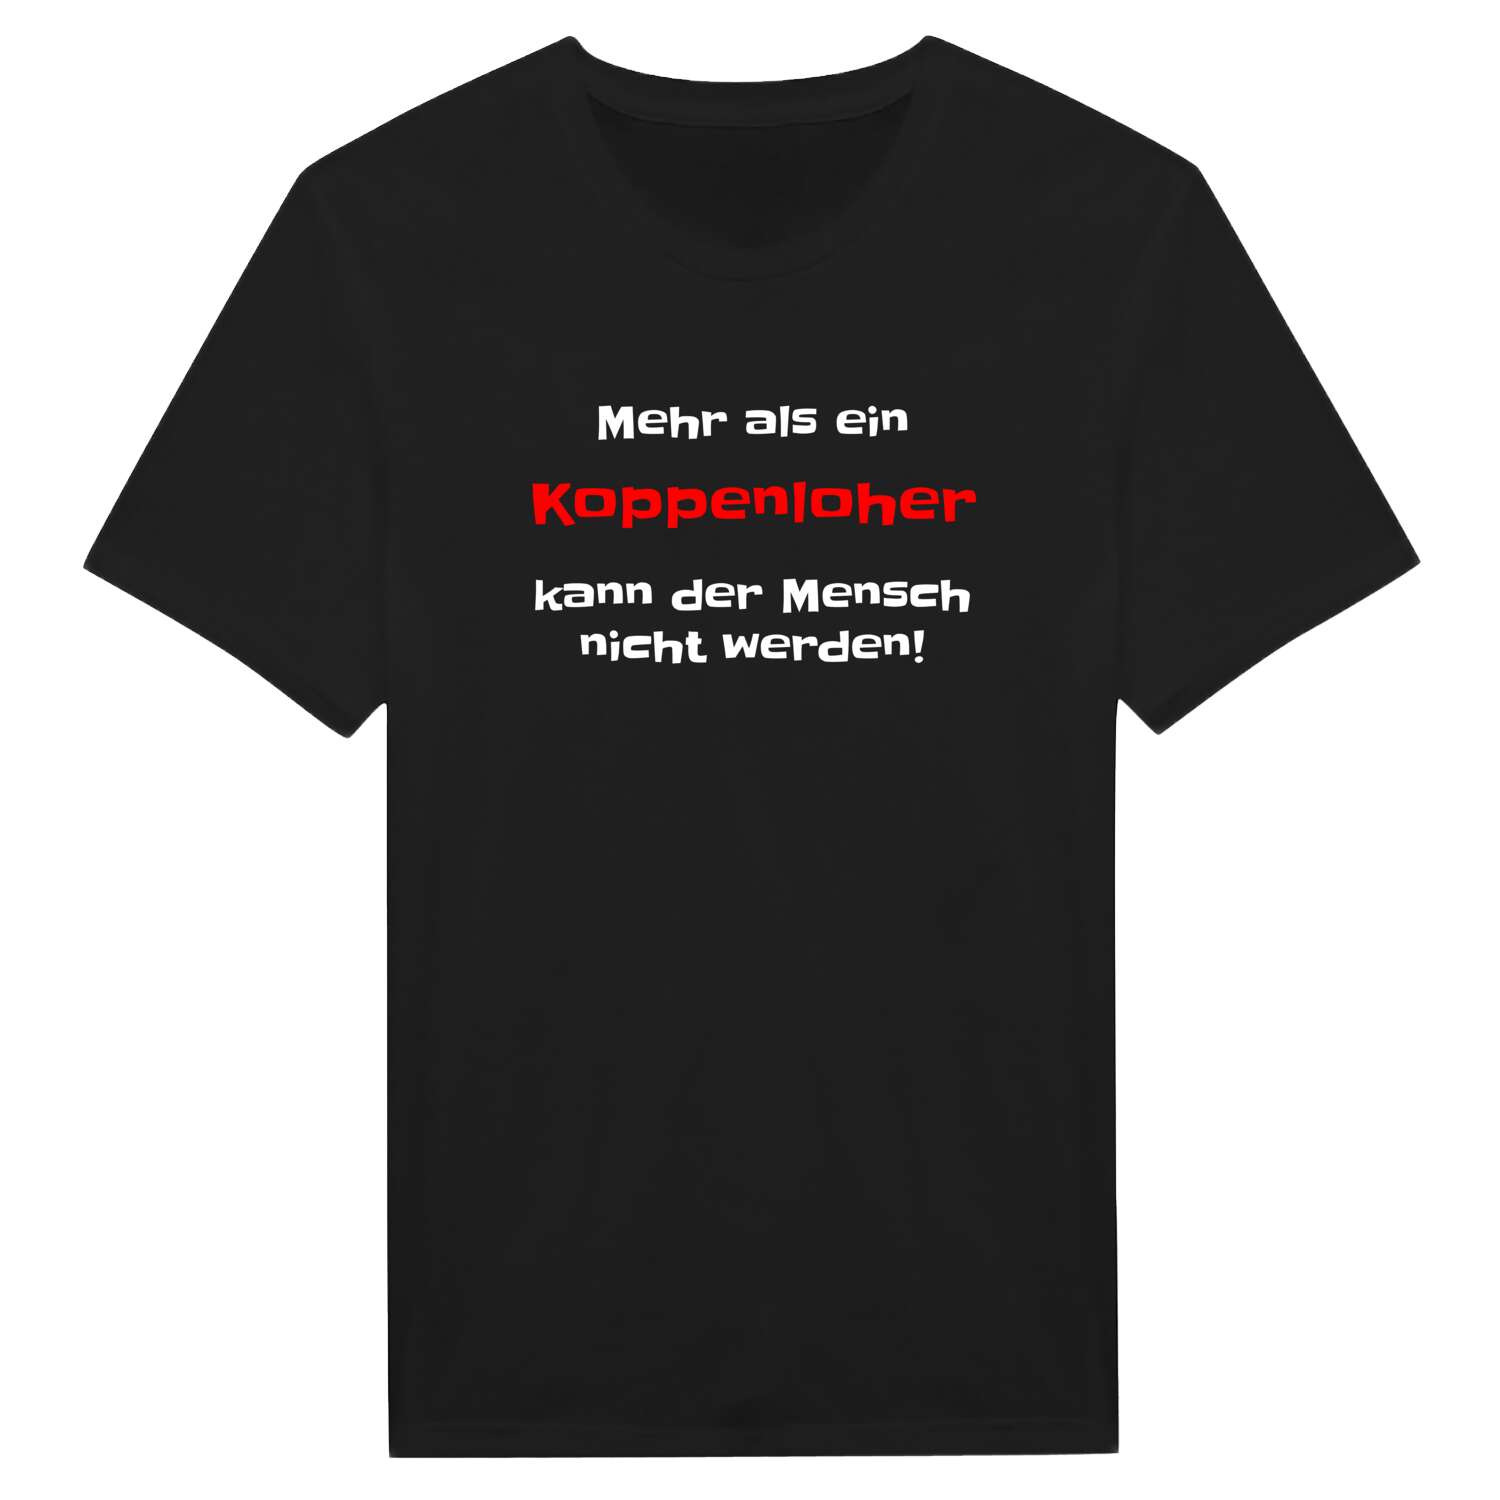 Koppenloh T-Shirt »Mehr als ein«